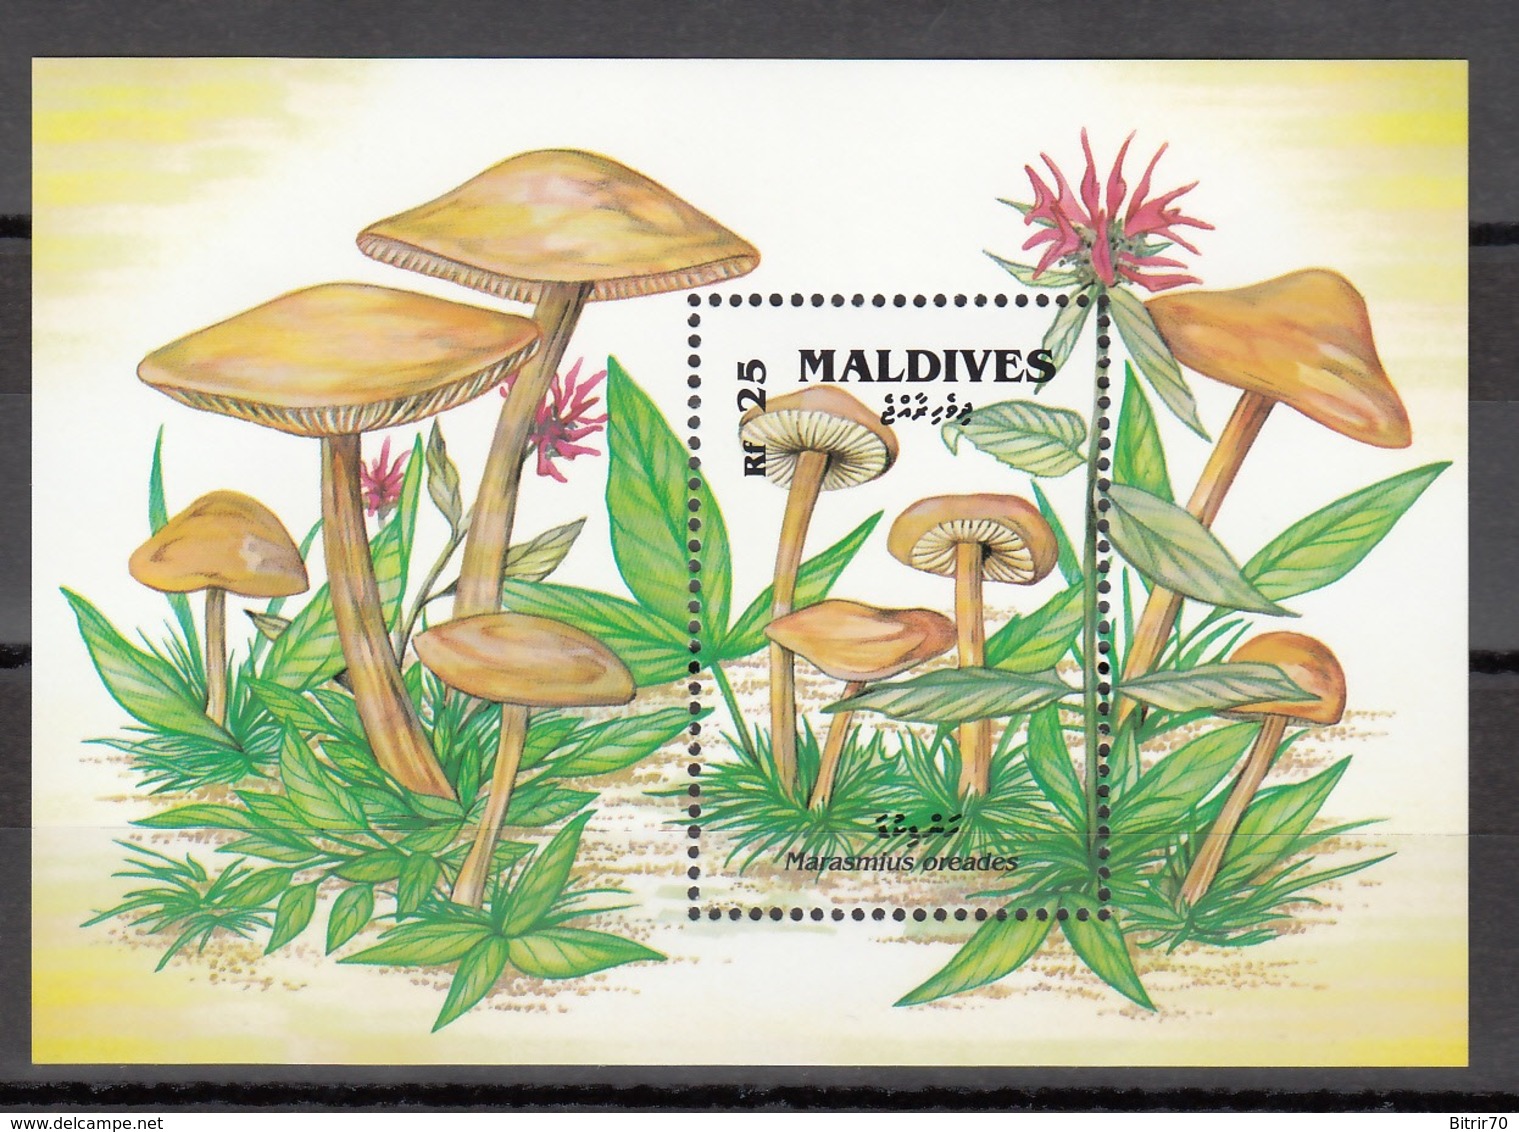 MALDIVES, 1992   Yvert Nº HB 225  MNH, Marasmius Oreades. - Mushrooms